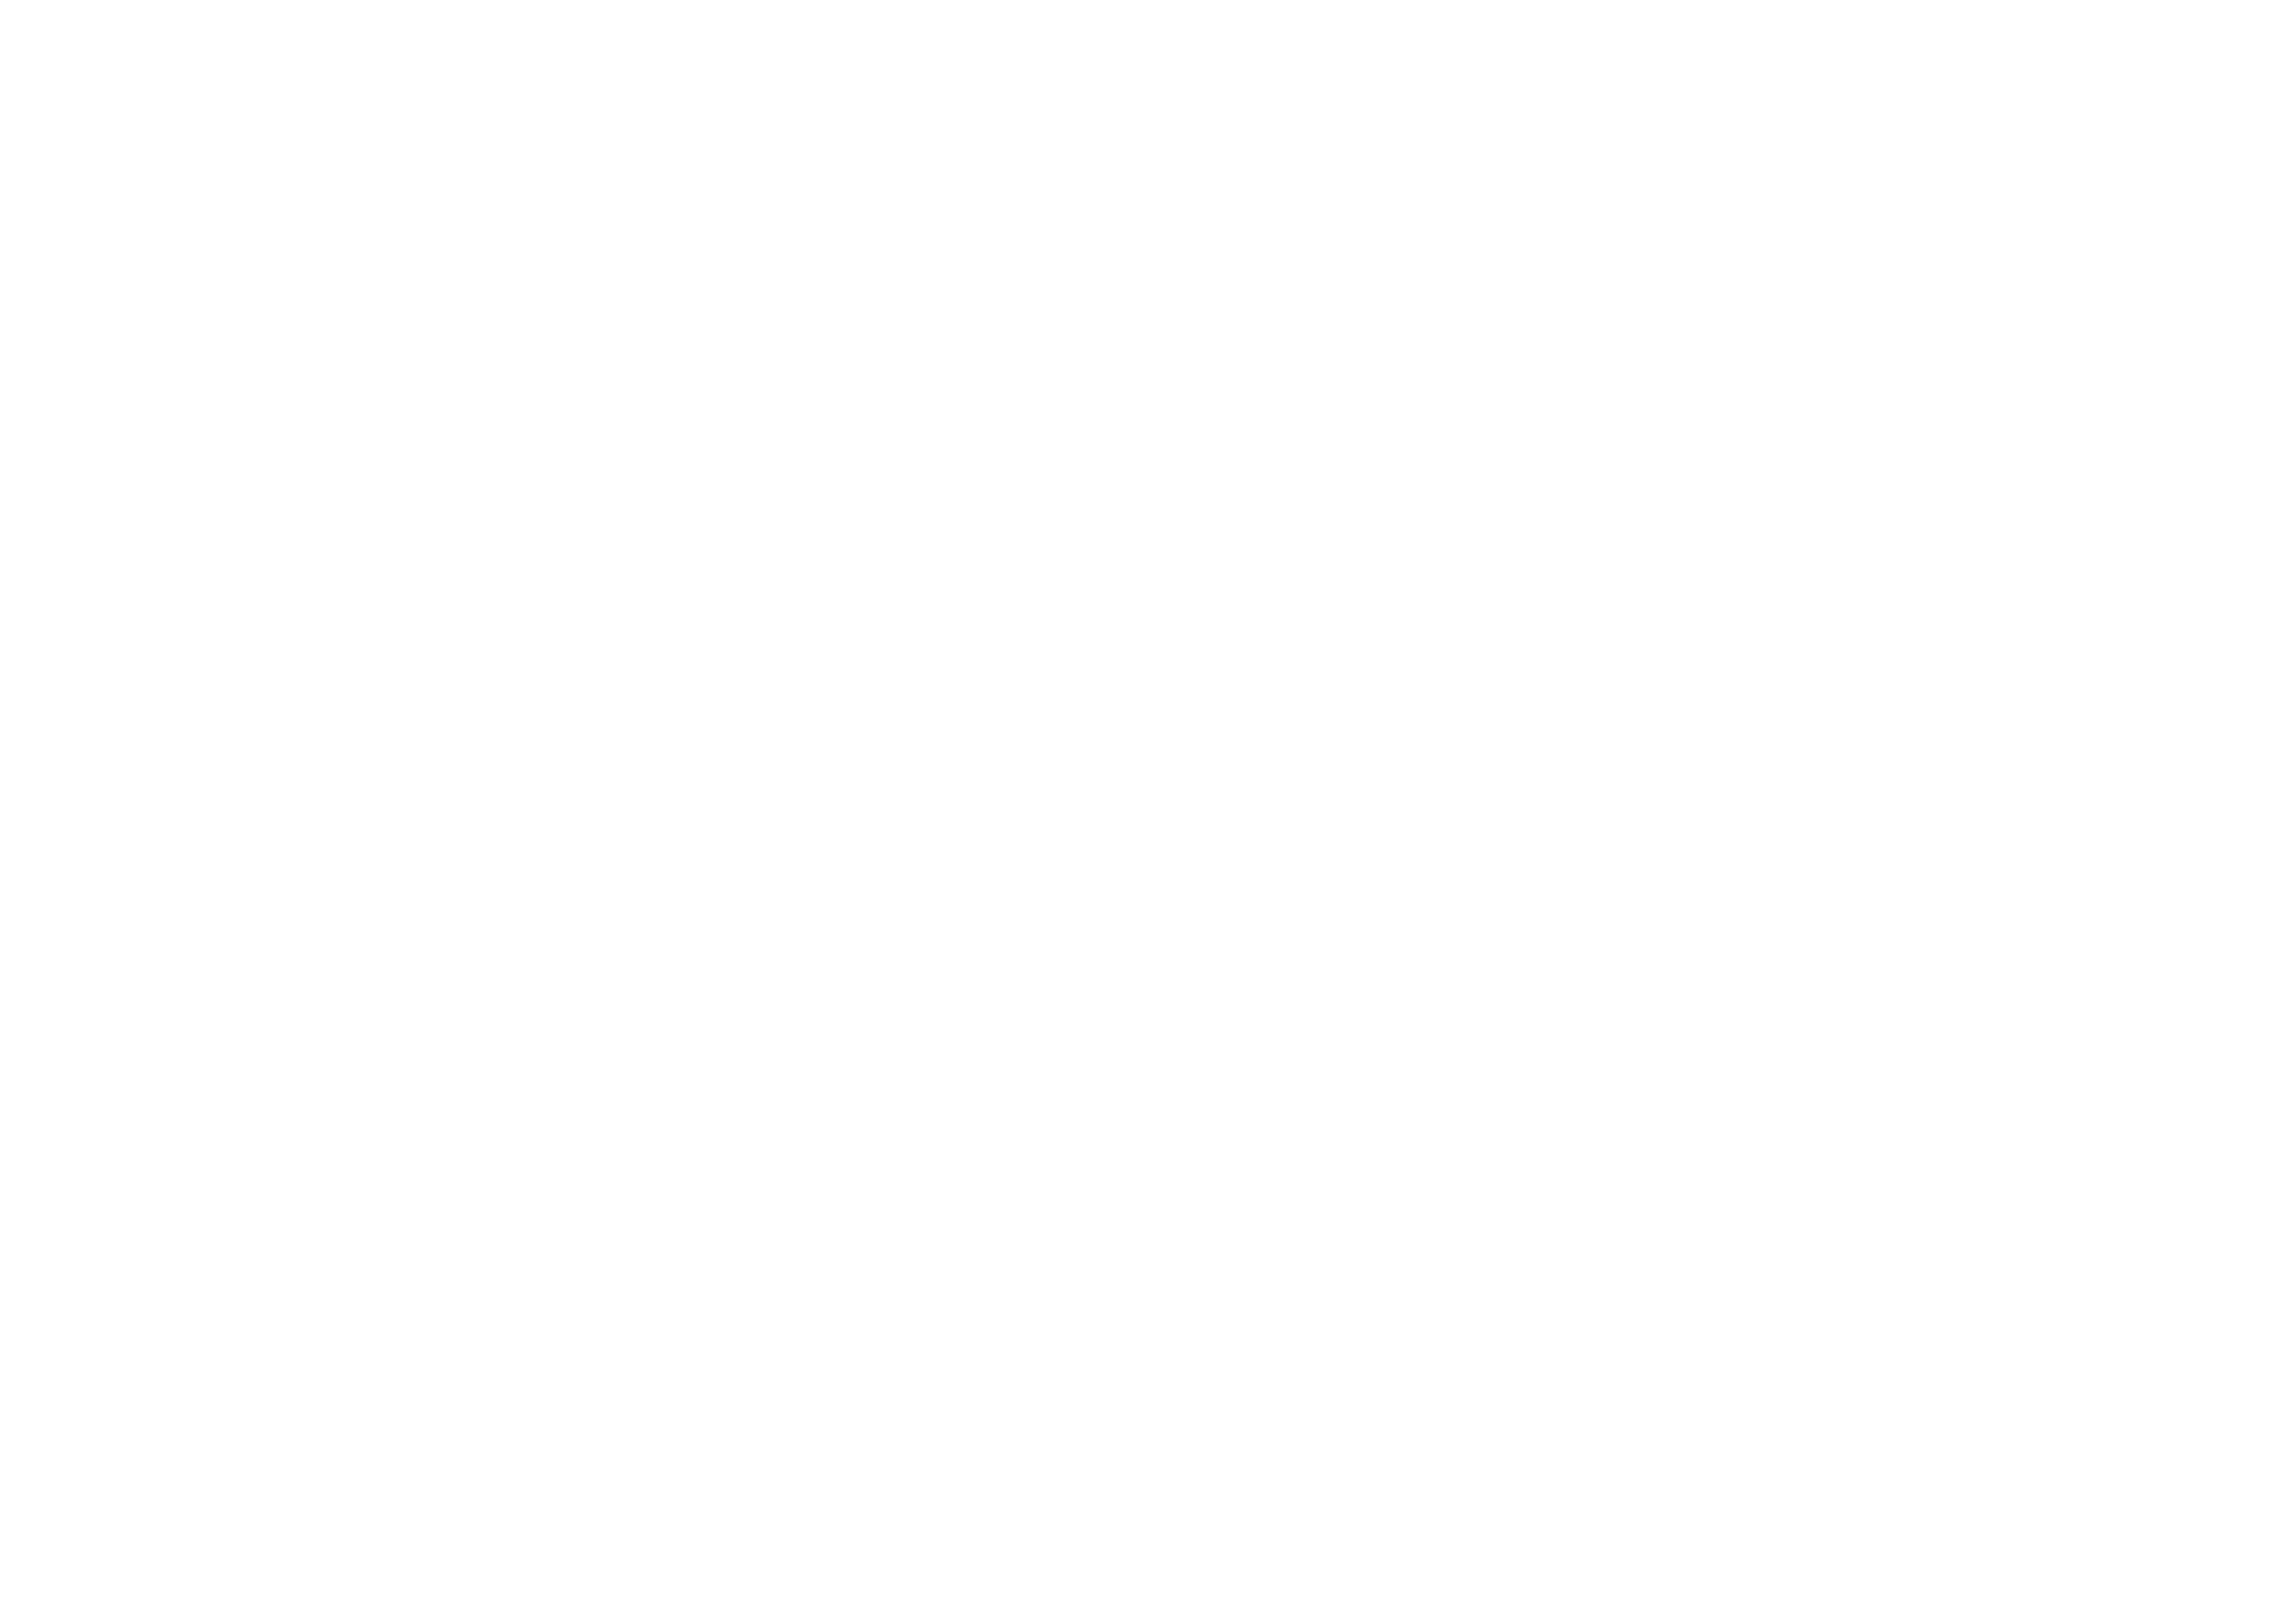 ARROGANCE- Passion